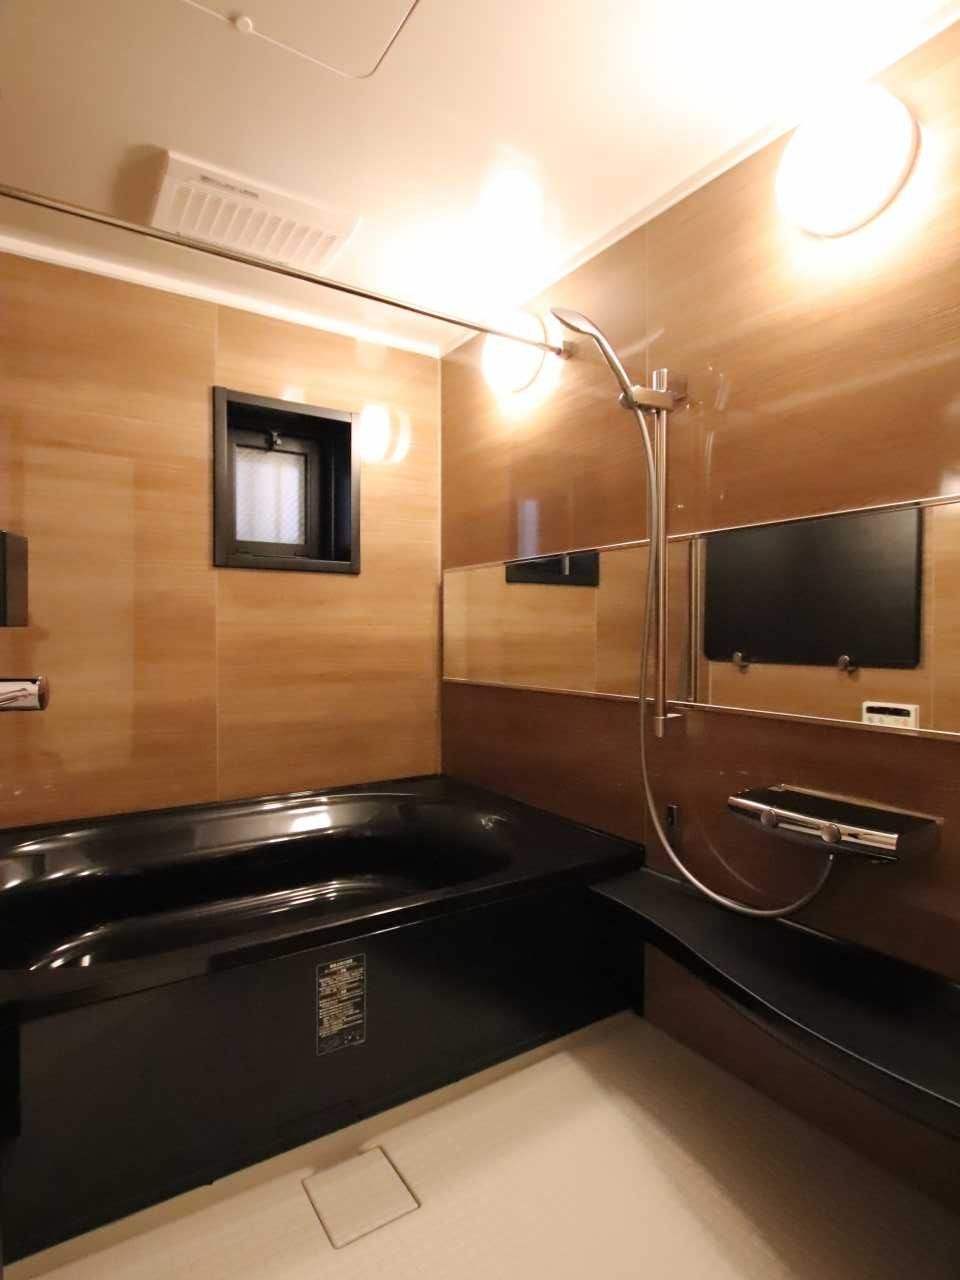 マンションのお風呂をリフォームしたい〜ユニットバスのリフォームについて徹底解説！